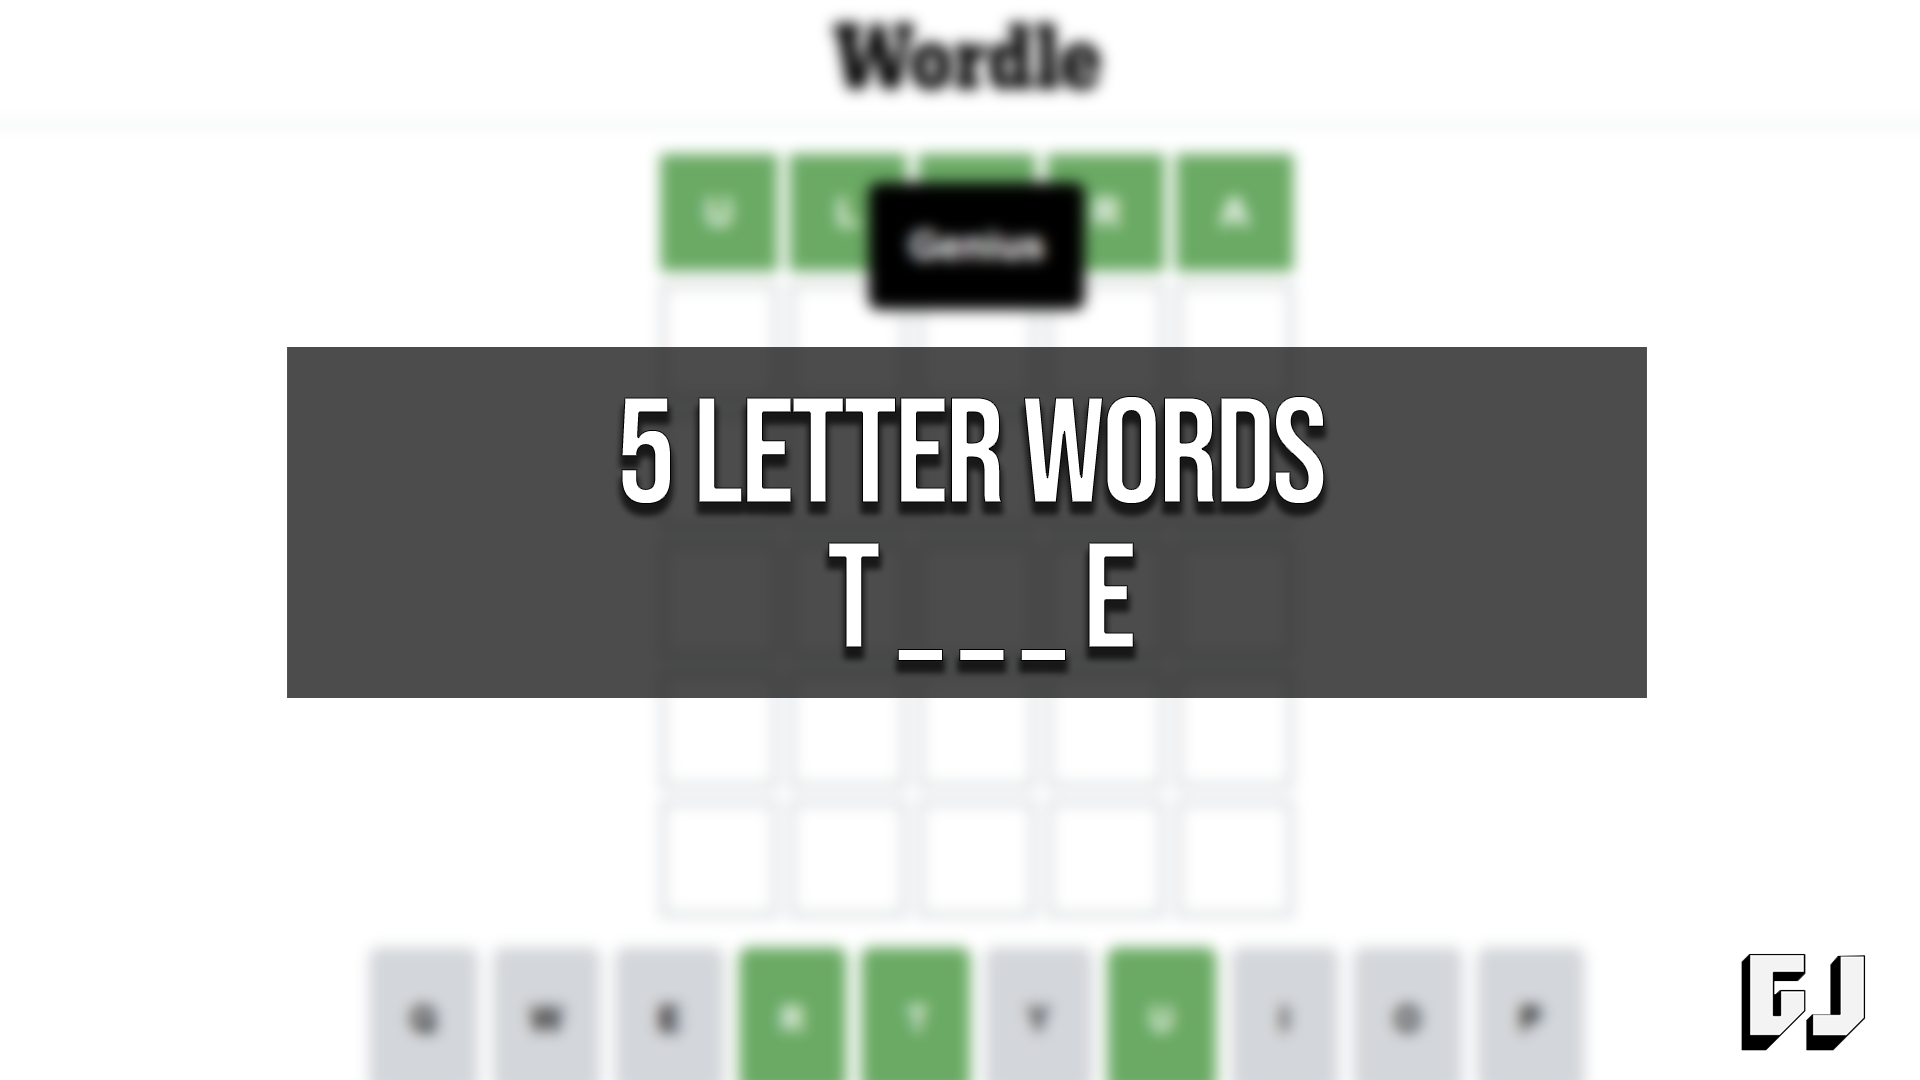 5-letter-words-ending-e-t-5letterwordsending